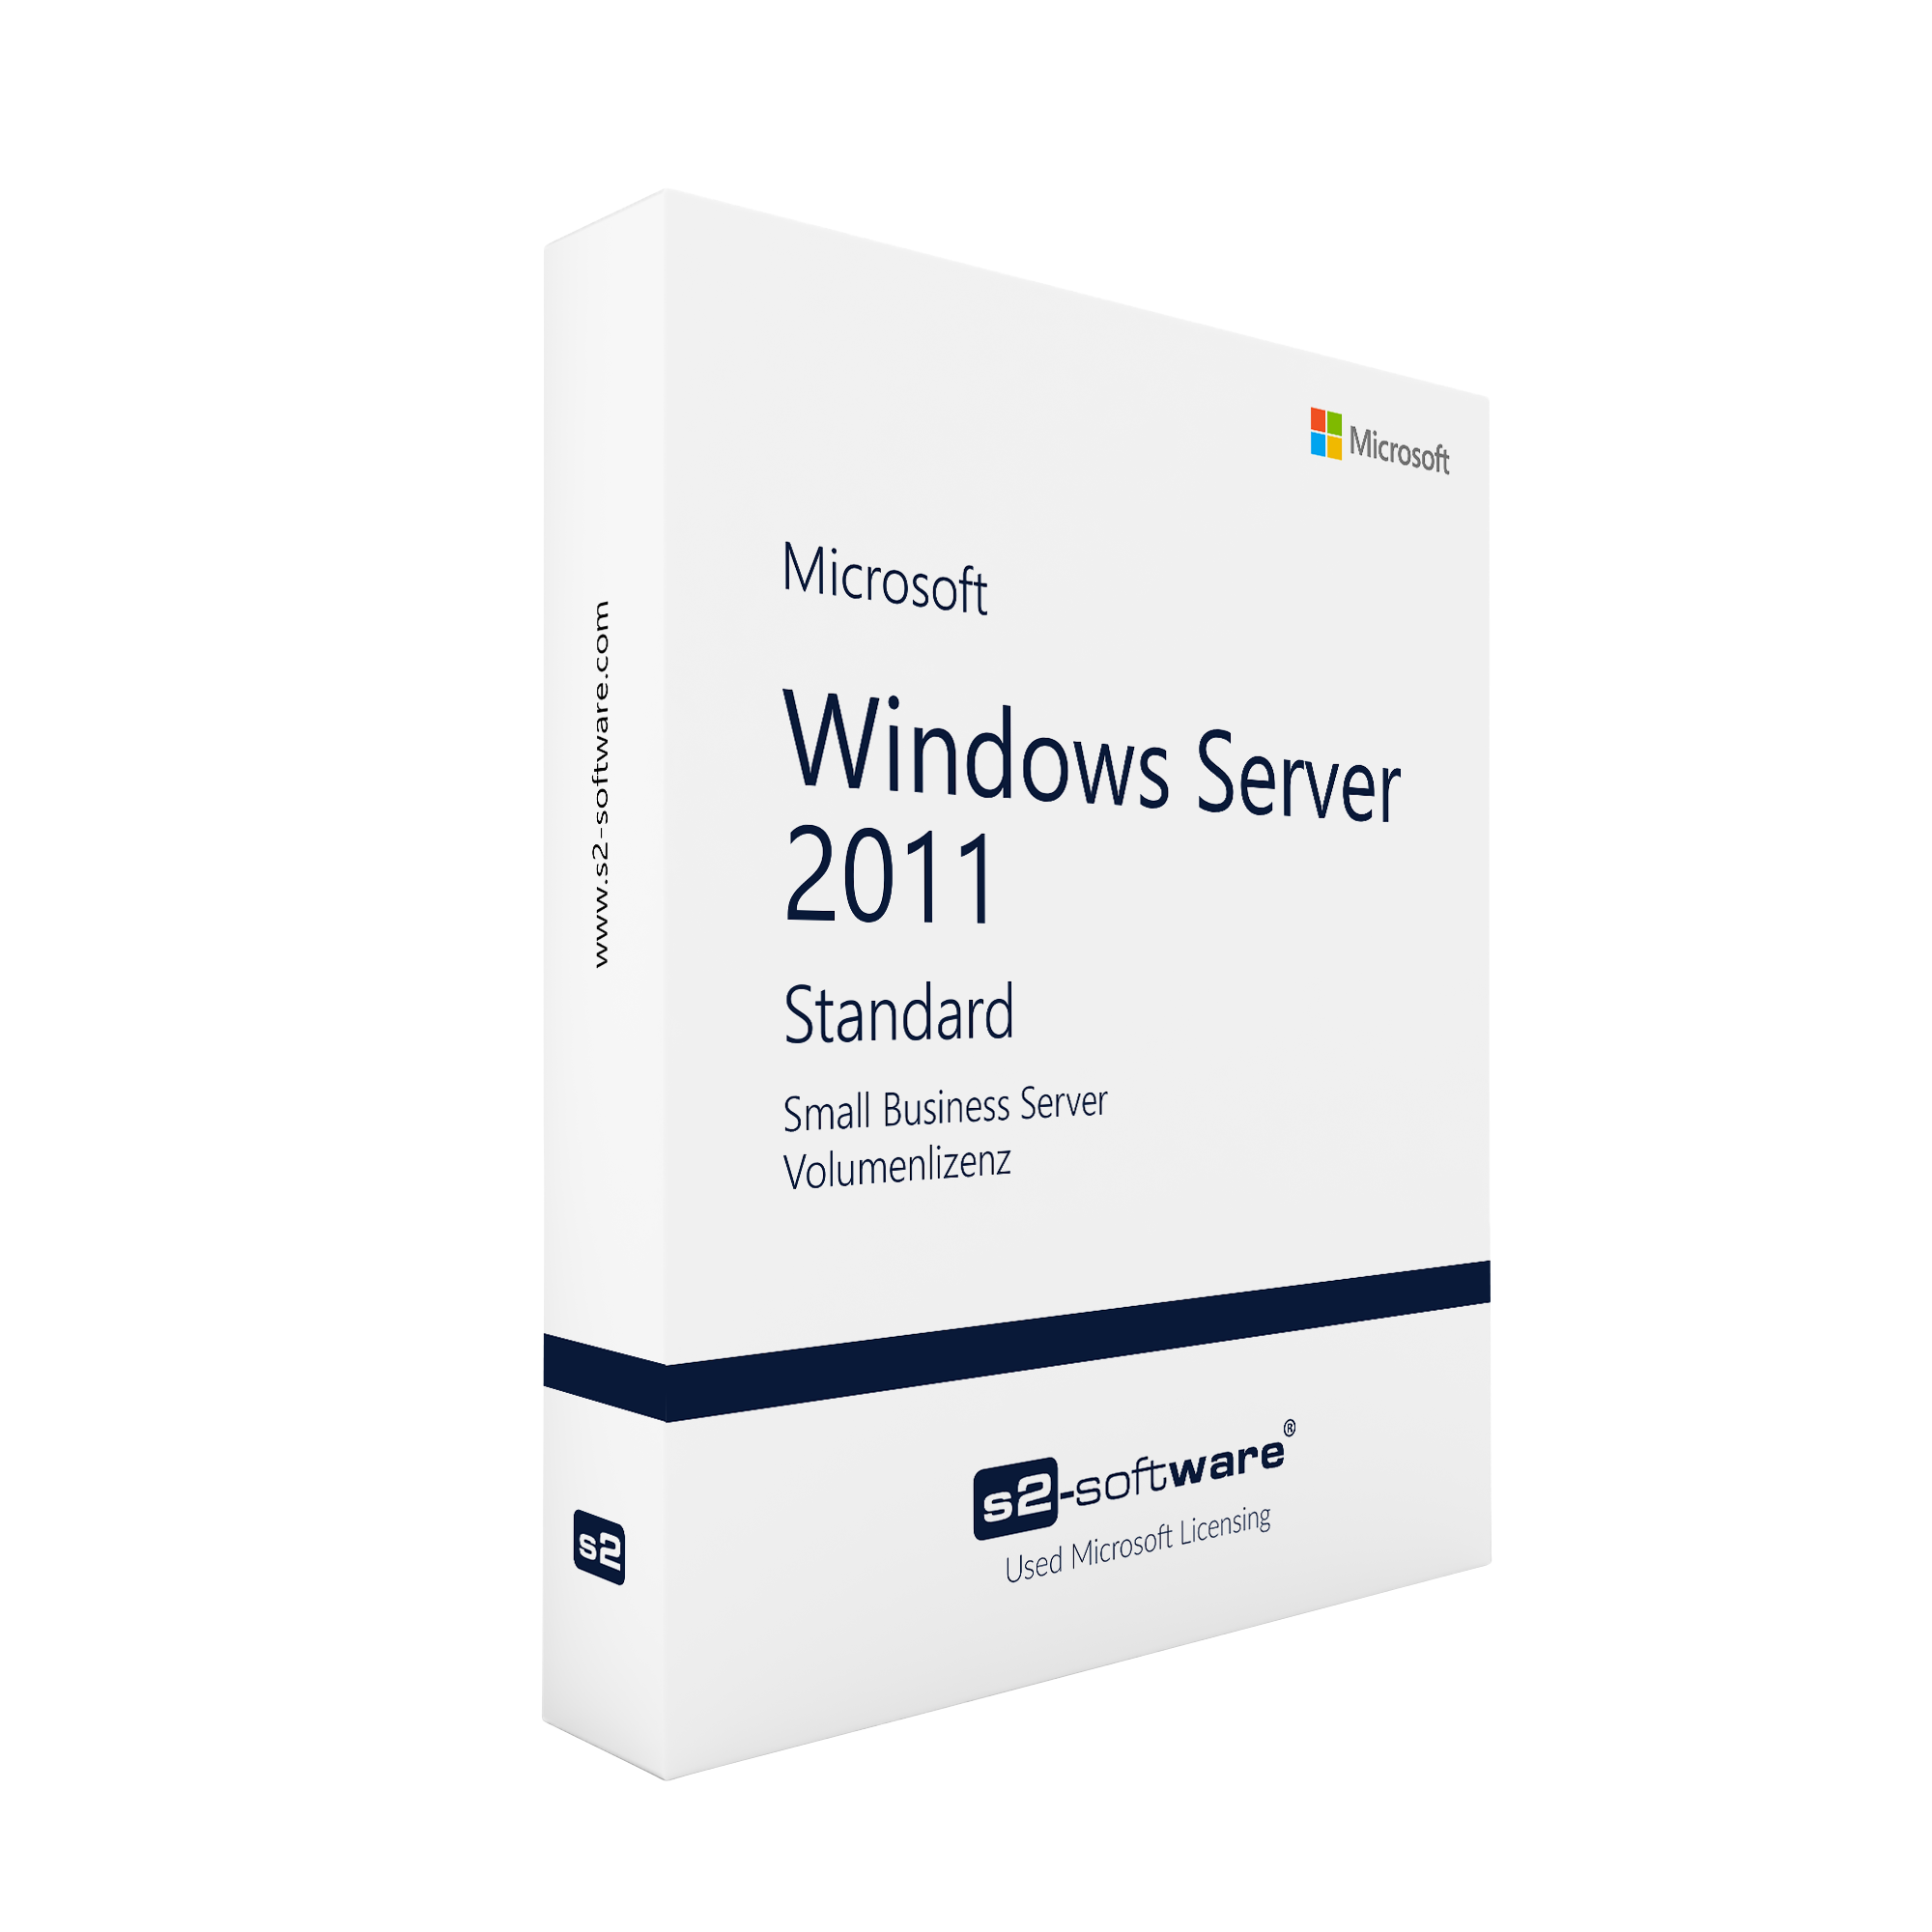 Windows Server 2011 SBS